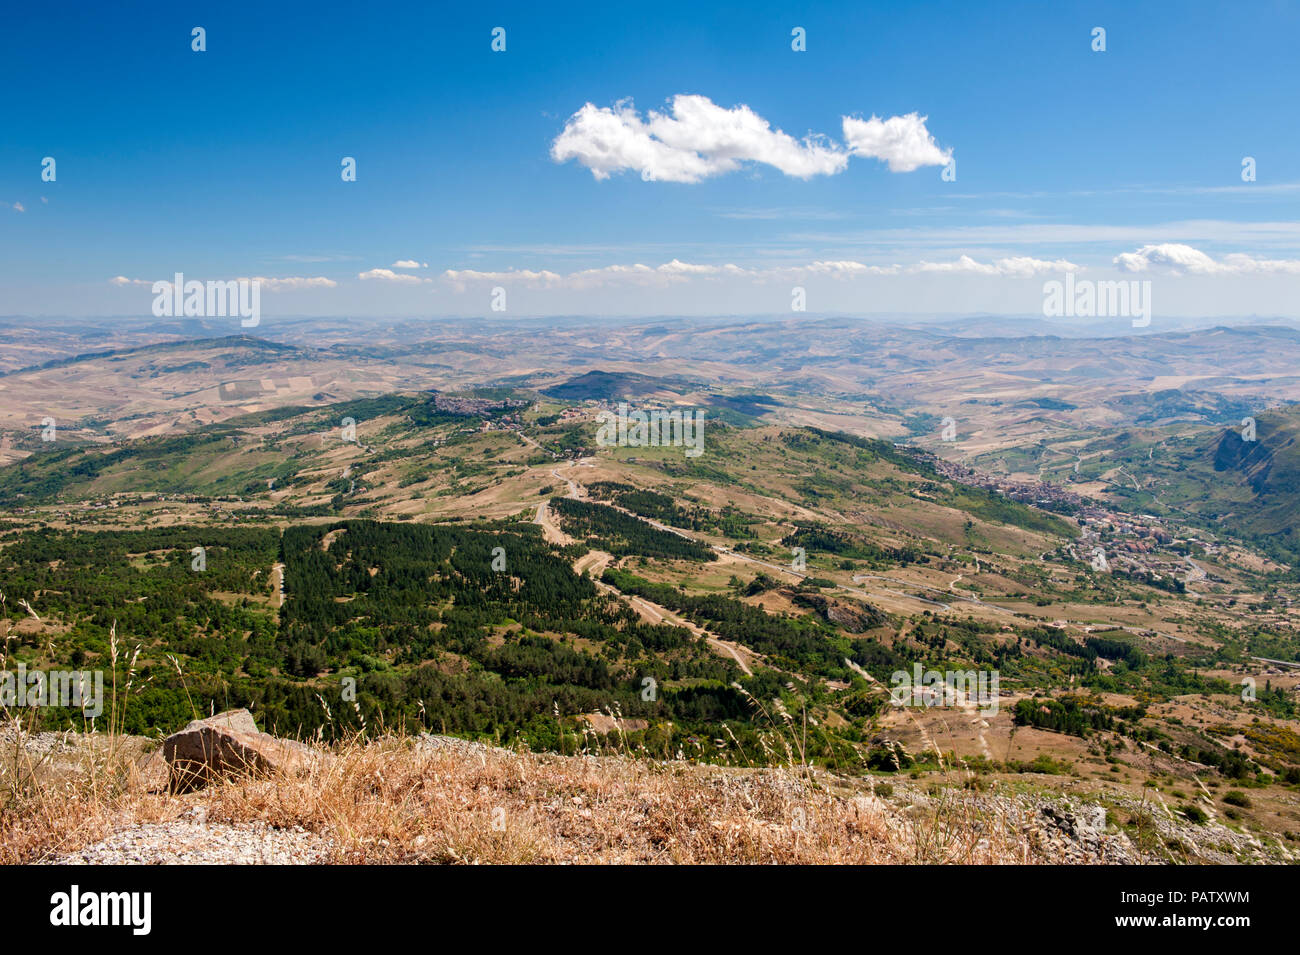 La vista sulla Sicilia centrale dal Parco delle Madonie, una vasta riserva naturale e casa per le Madonie mountain range. Foto Stock